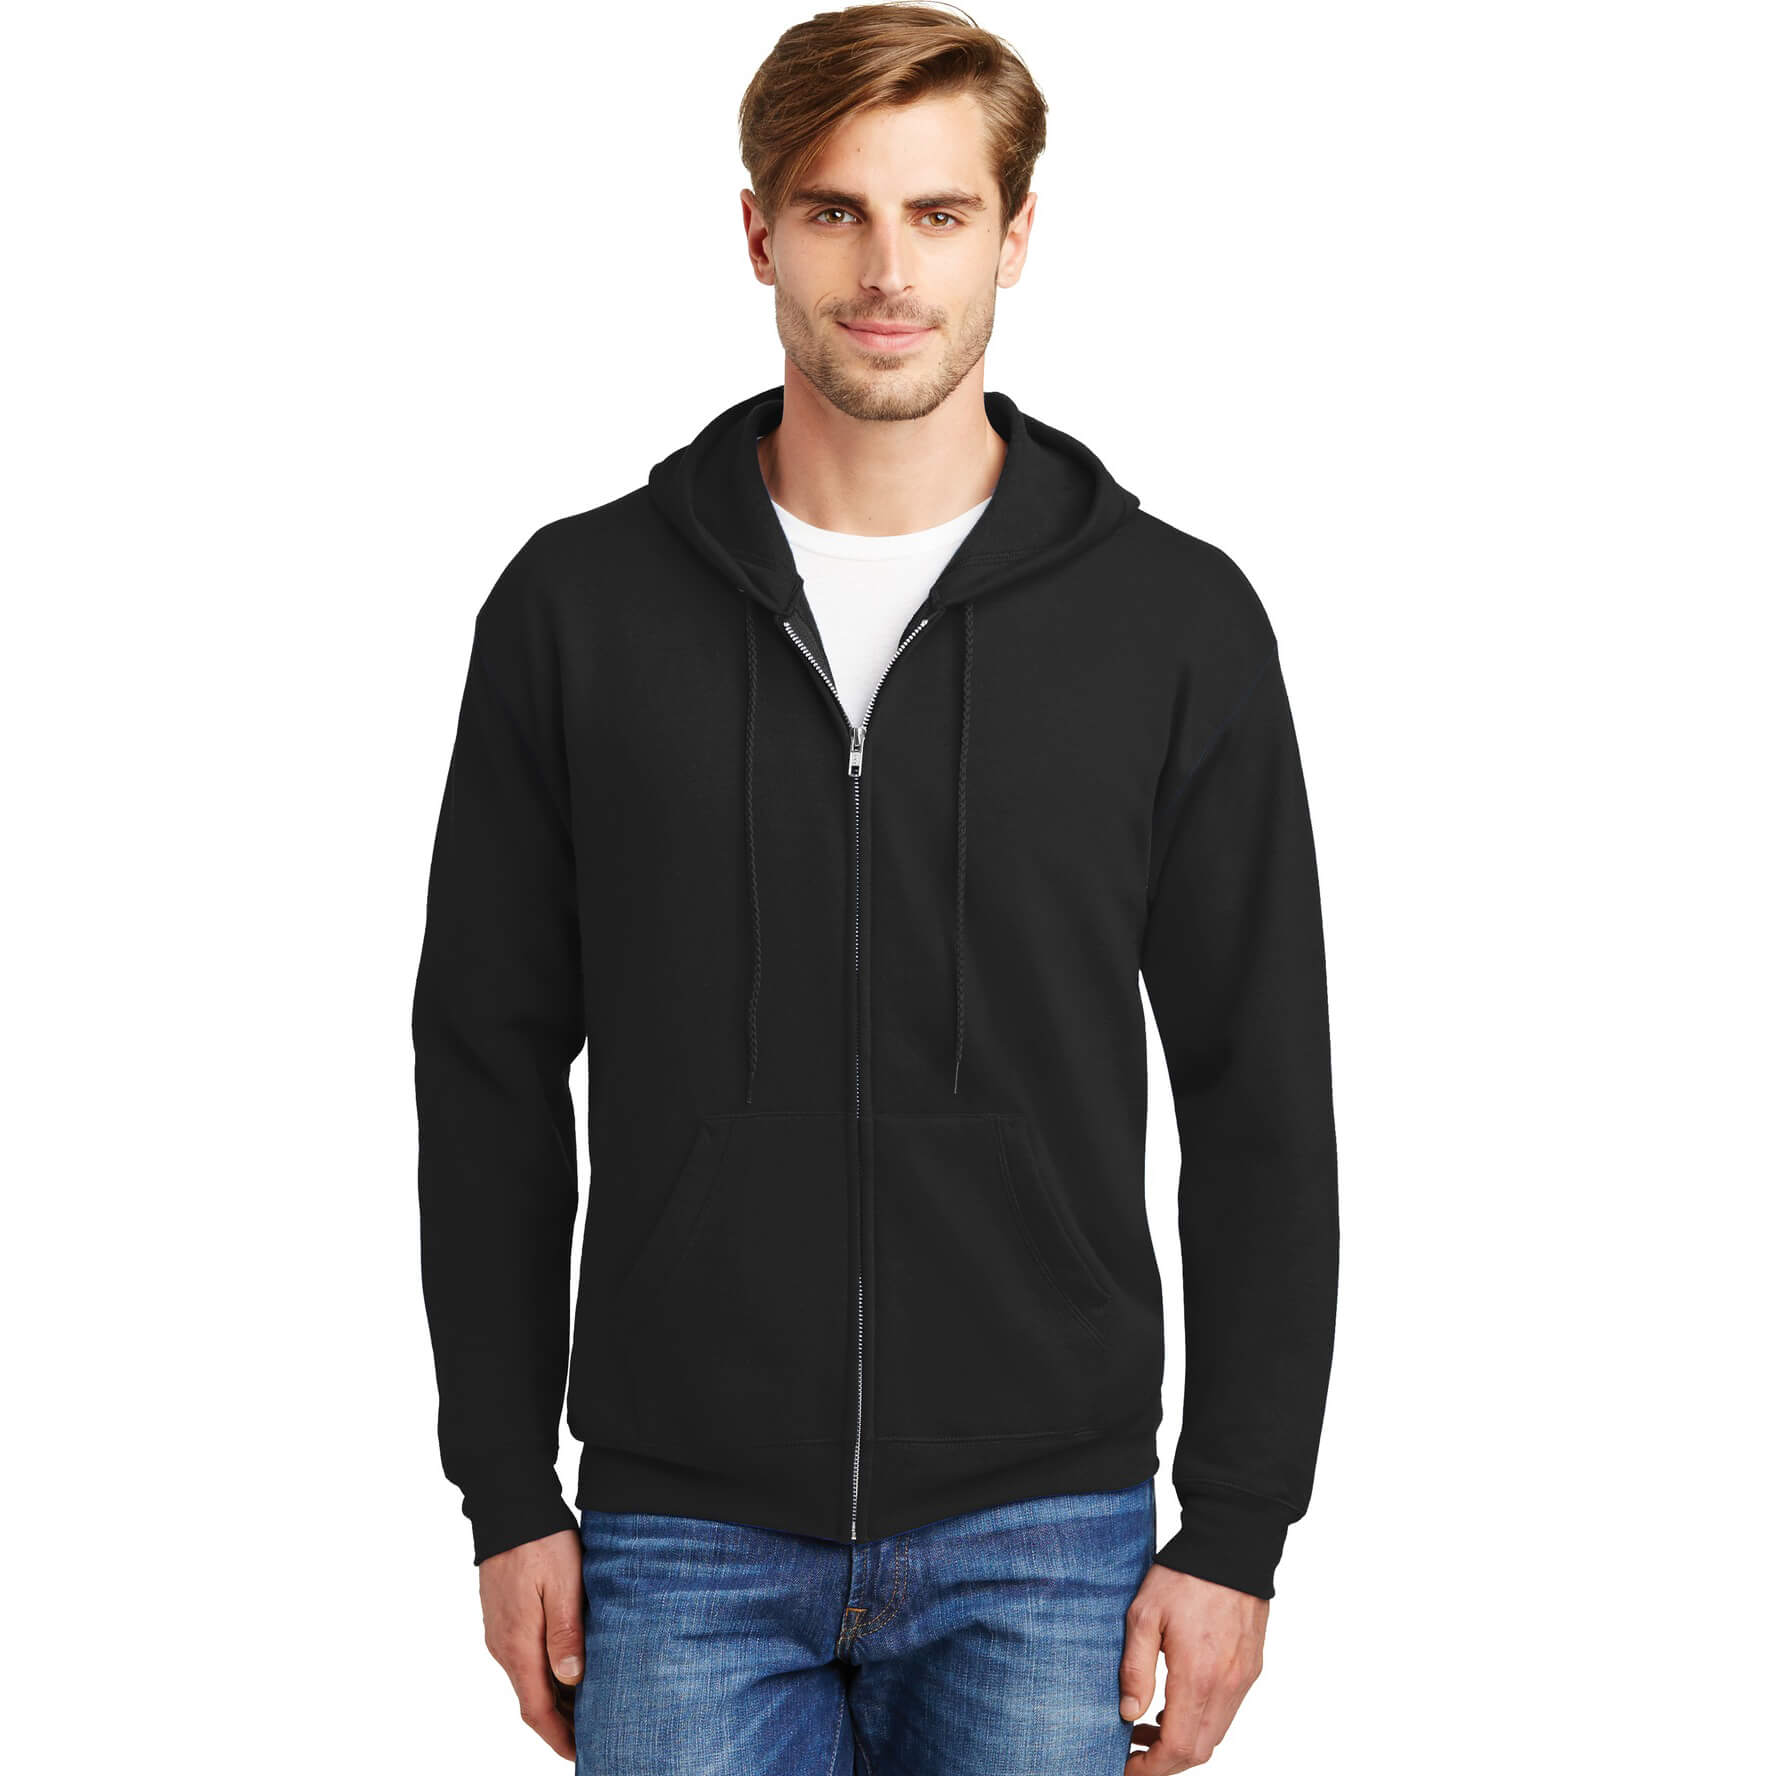 Hanes ® - EcoSmart ® Full-Zip Hooded Sweatshirt - Phelps USA